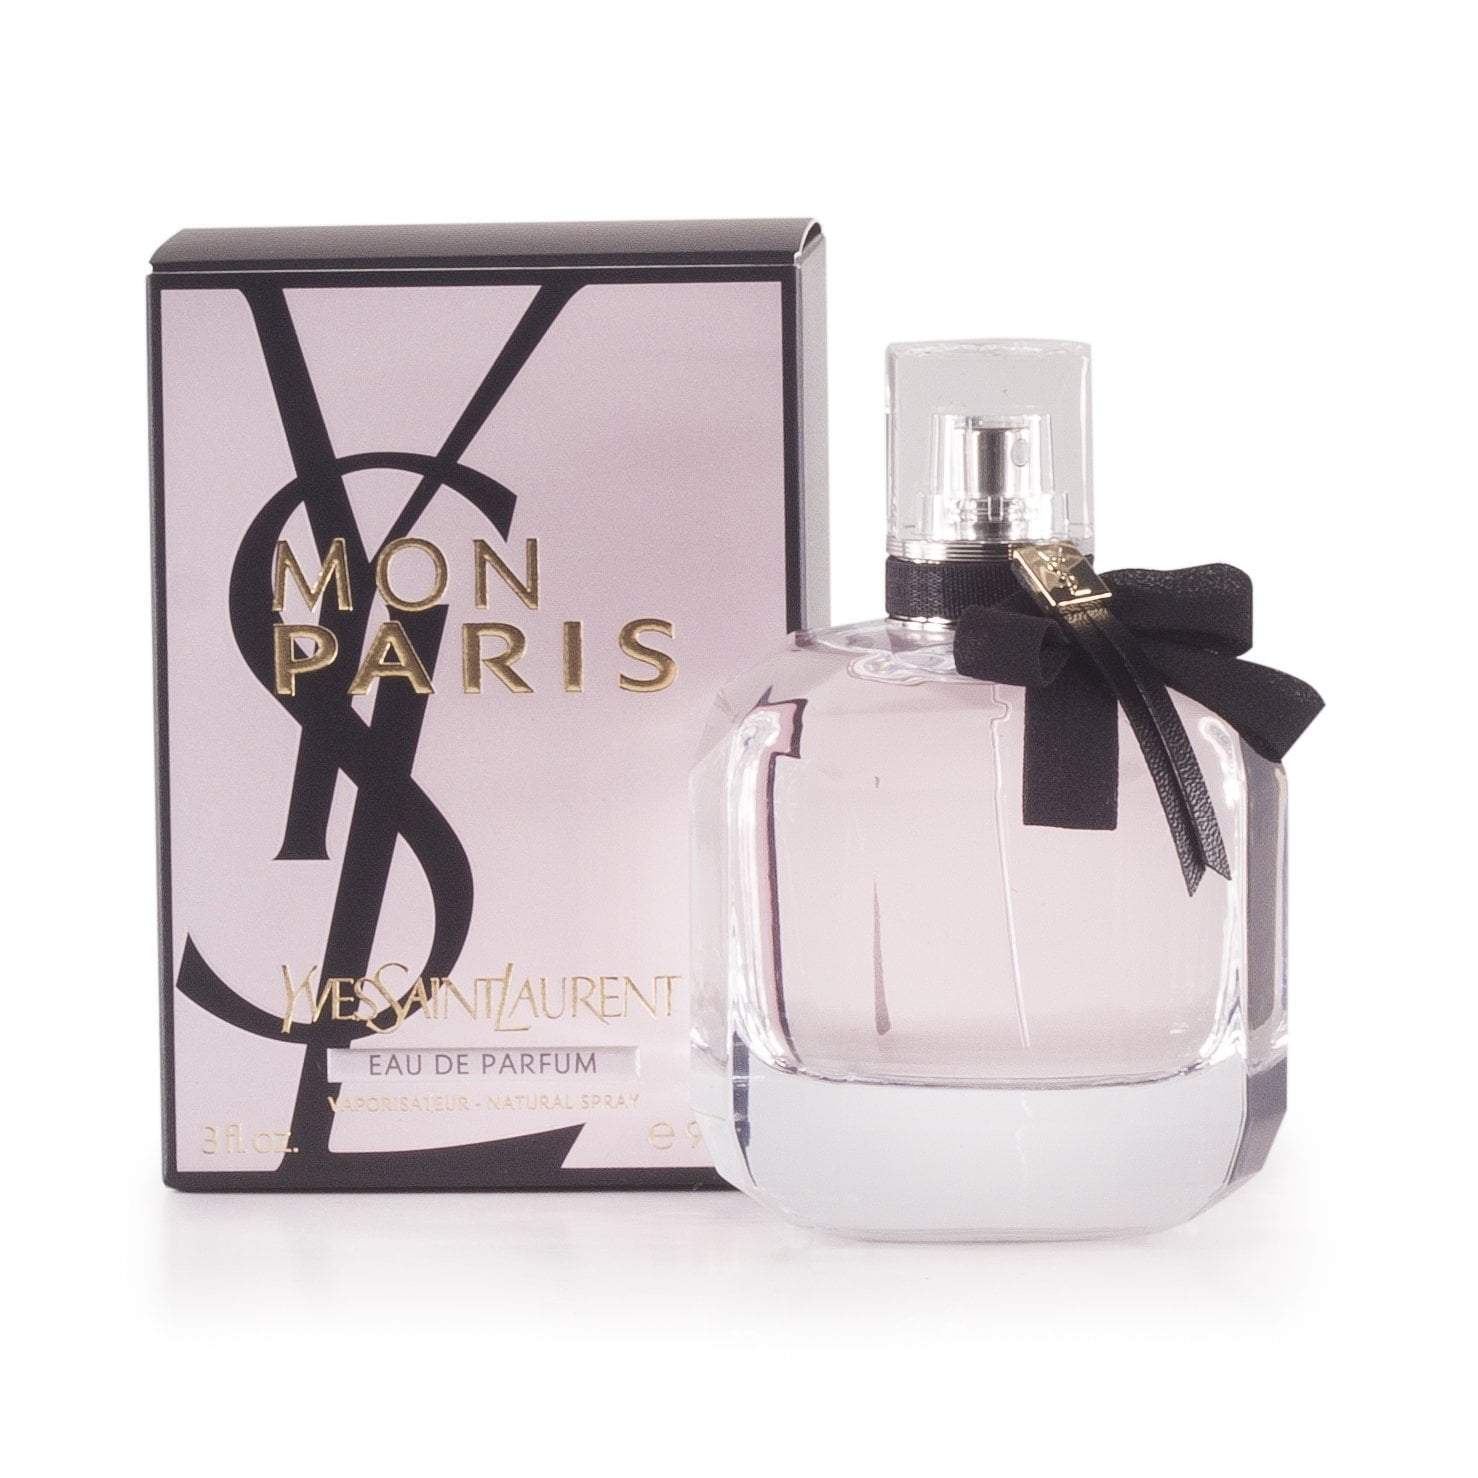 Mon Paris Eau de Parfum Spray for Women by Yves Saint Laurent 3.0 oz. Click to open in modal